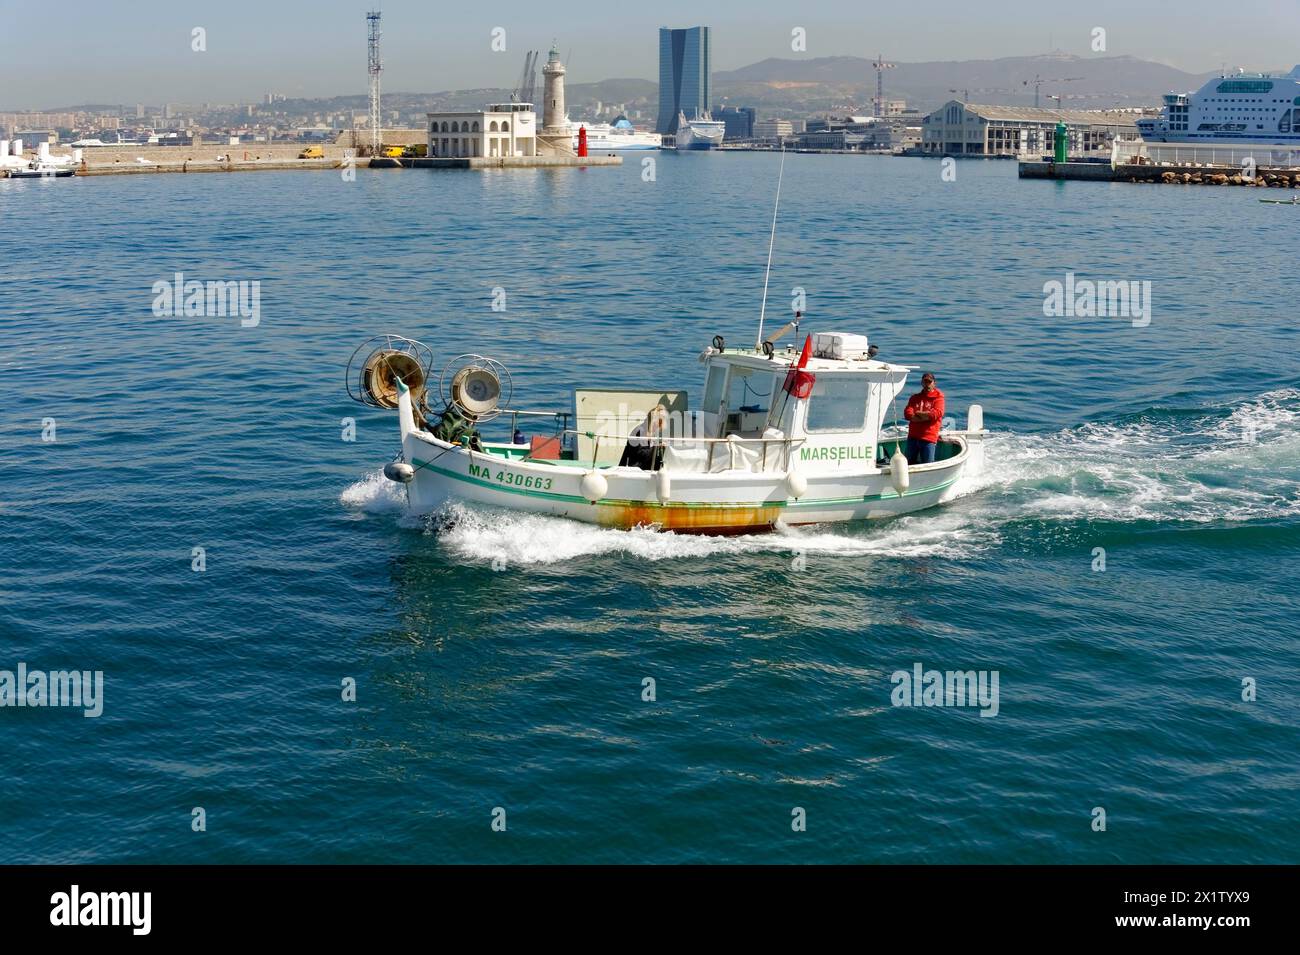 Marseille, Ein Fischerboot auf dem Meer, in der Nähe eines Hafens, Marseille, Departement Bouches-du-Rhone, Region Provence-Alpes-Cote d'Azur, Frankreich Stockfoto